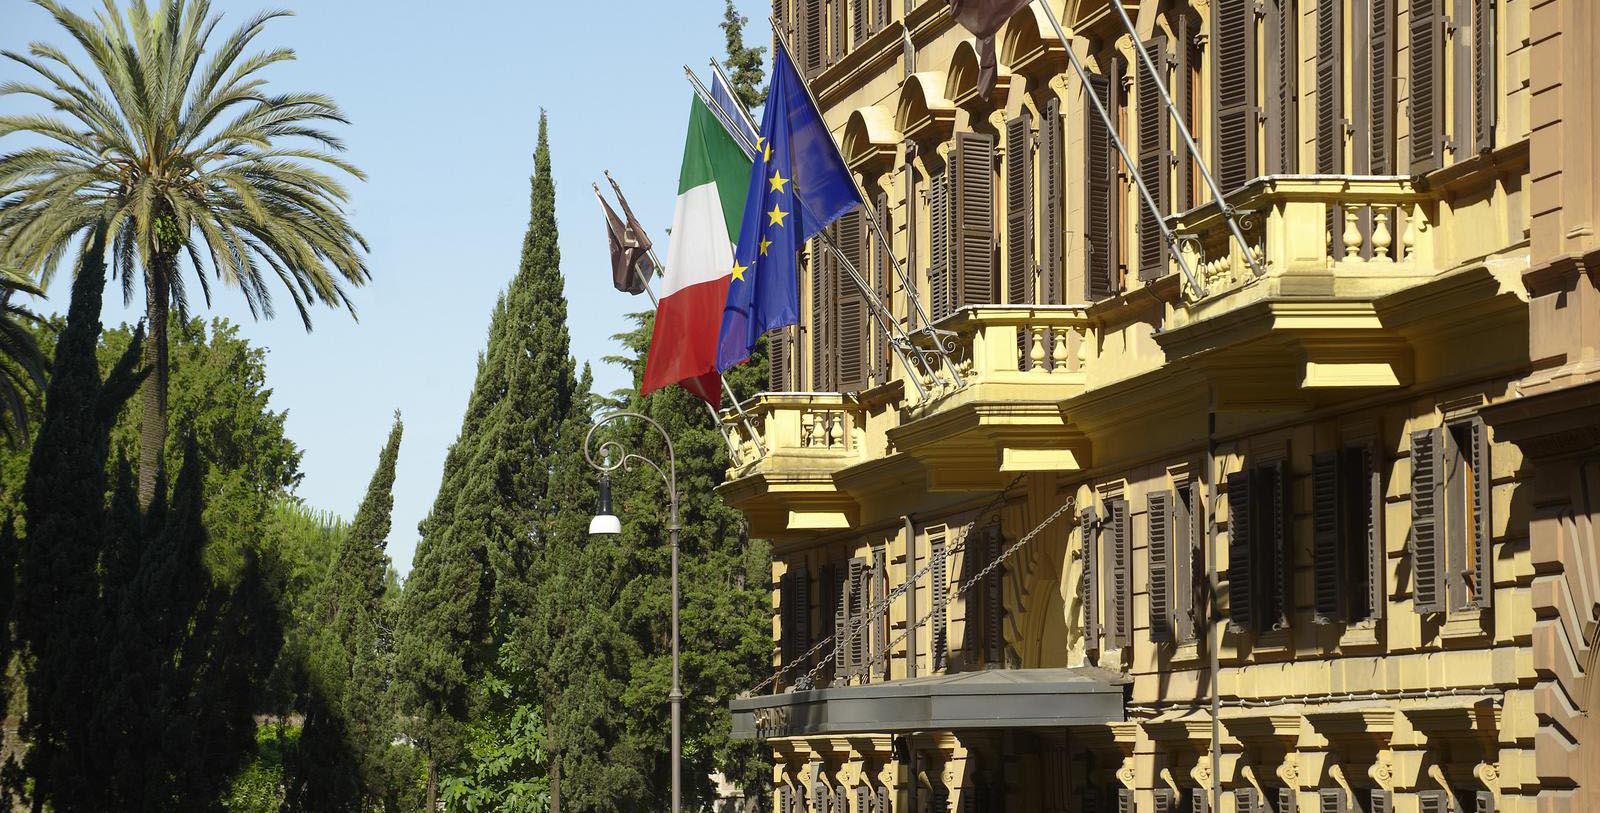 Discover the 19th-century architecture that defines the Sofitel Rome Villa Borghese.